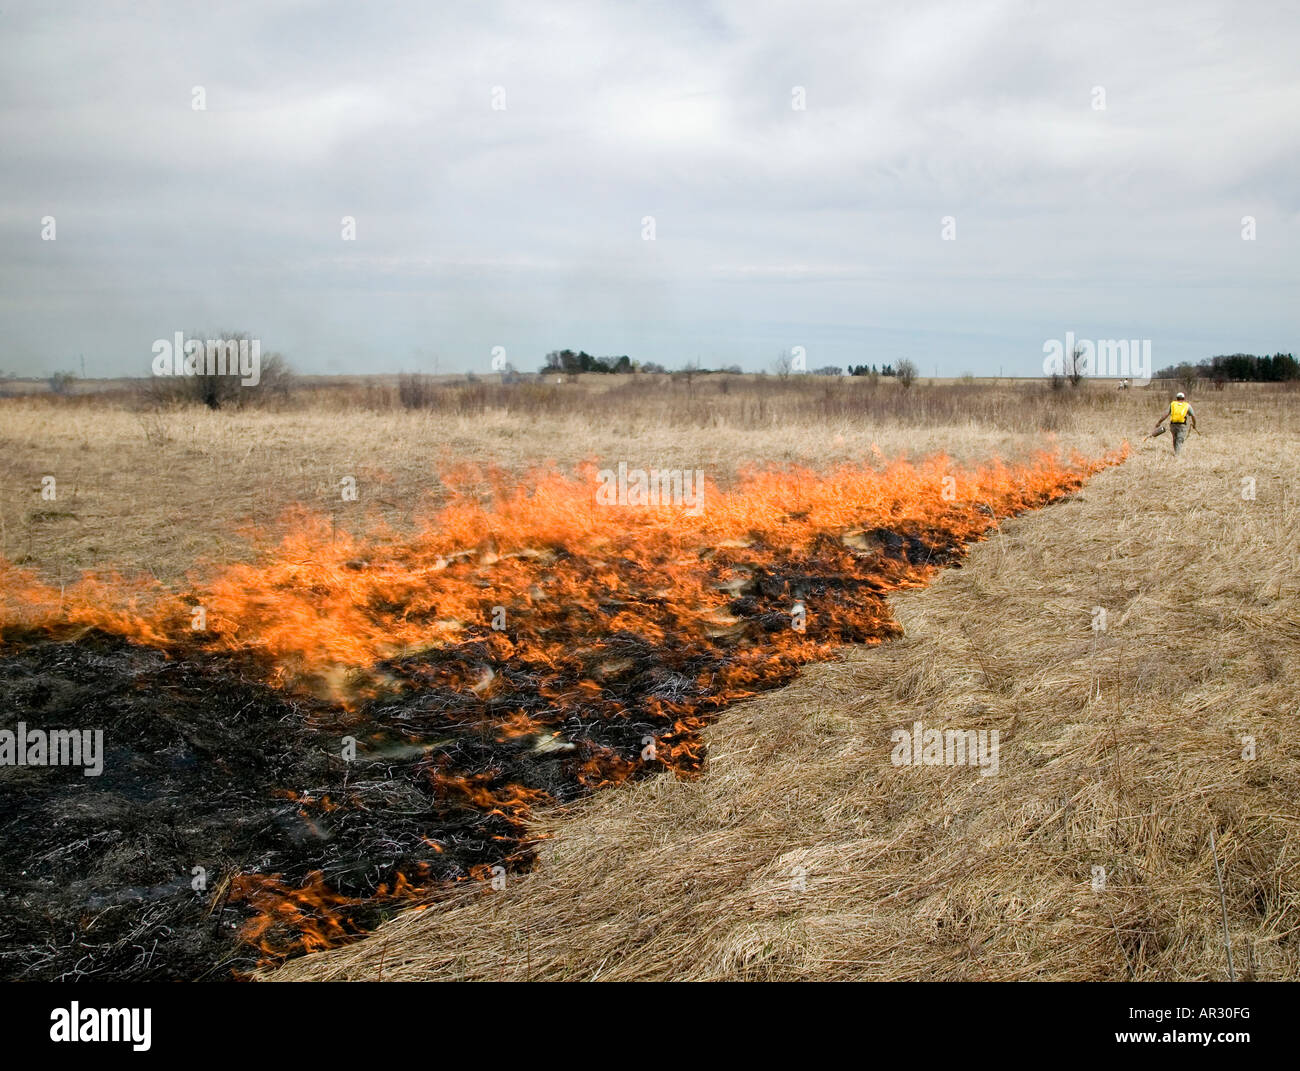 Beleuchtung die volle brennen während eine kontrollierte Verbrennung eine native Prärie, Howard County, Iowa USA Stockfoto